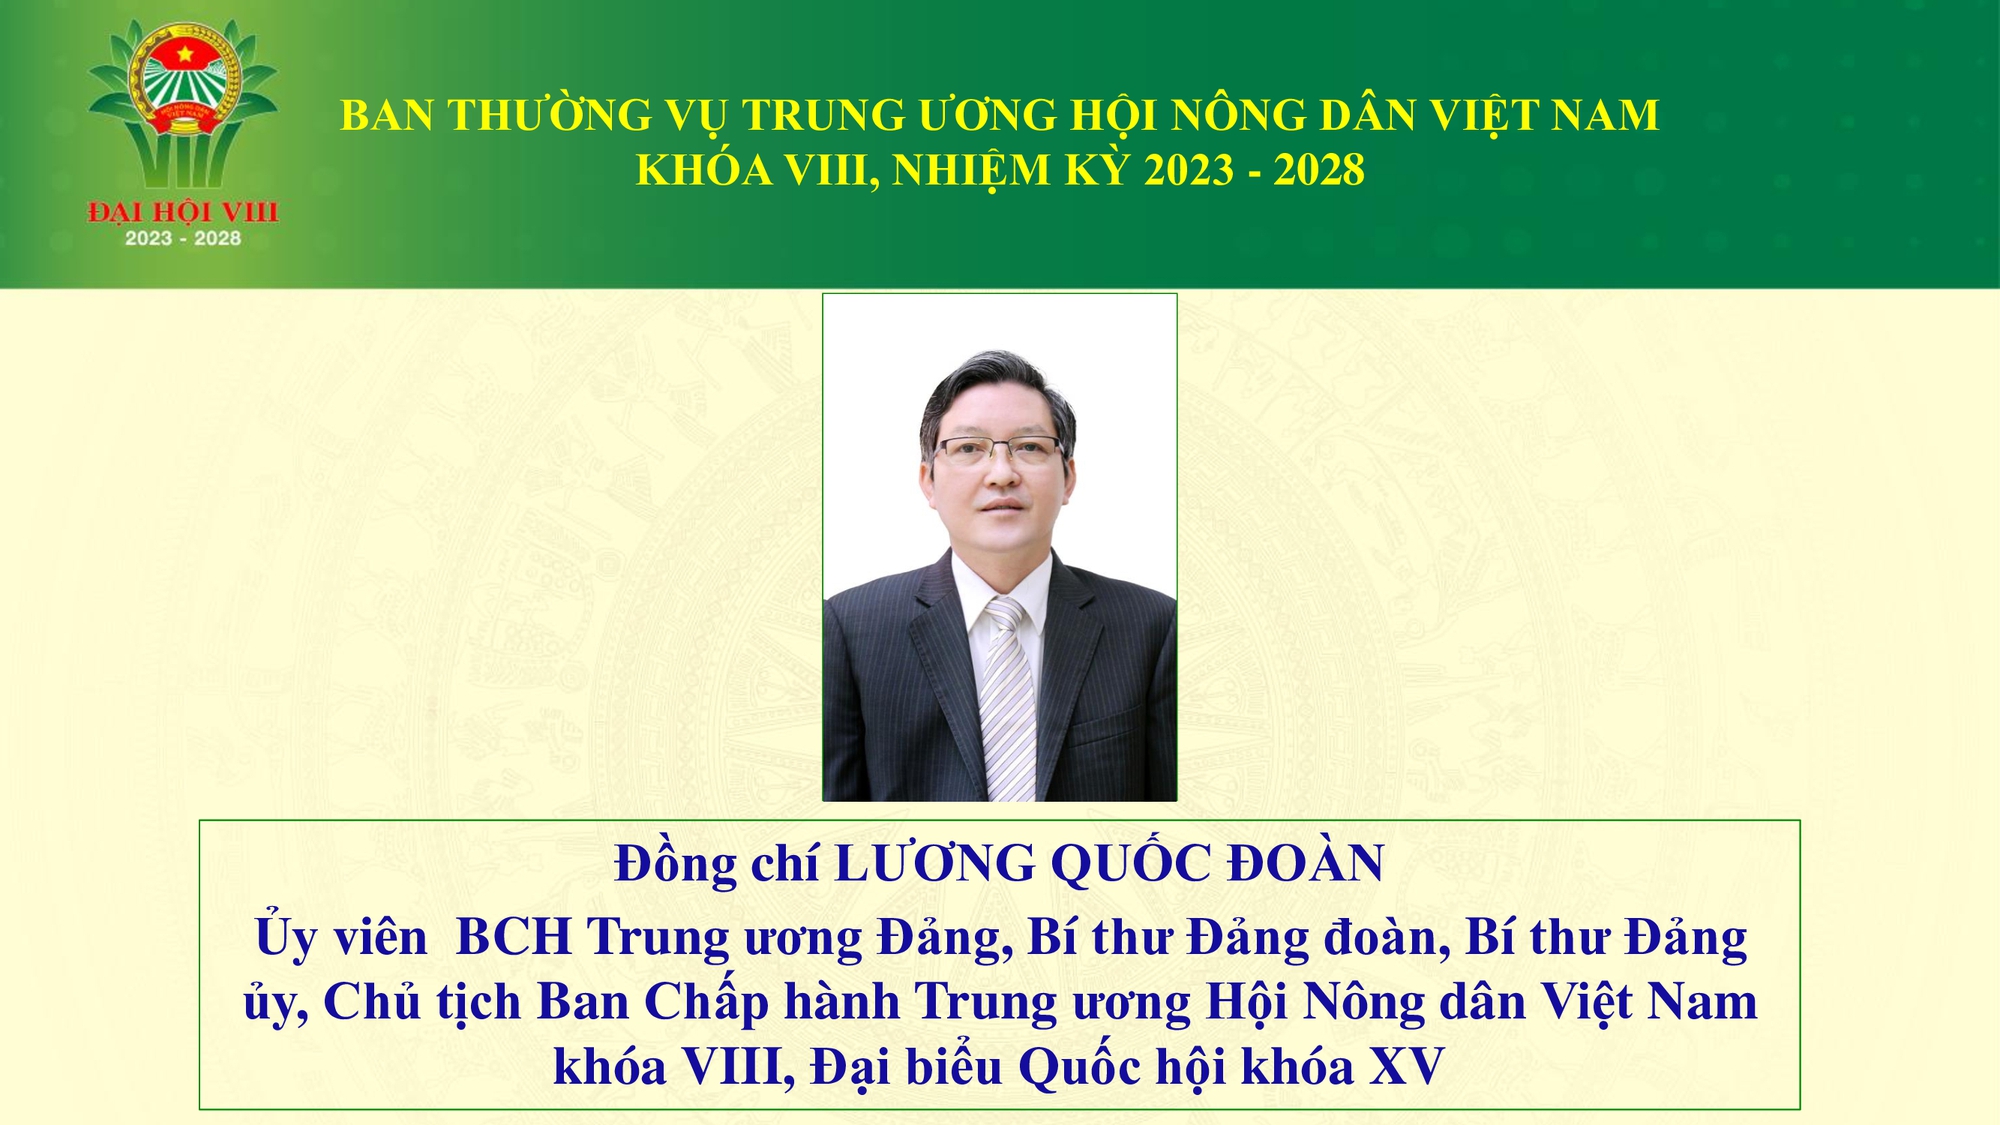 Danh sách 18 đồng chí tham gia Ban Thường vụ Trung ương Hội Nông dân Việt Nam - Ảnh 2.